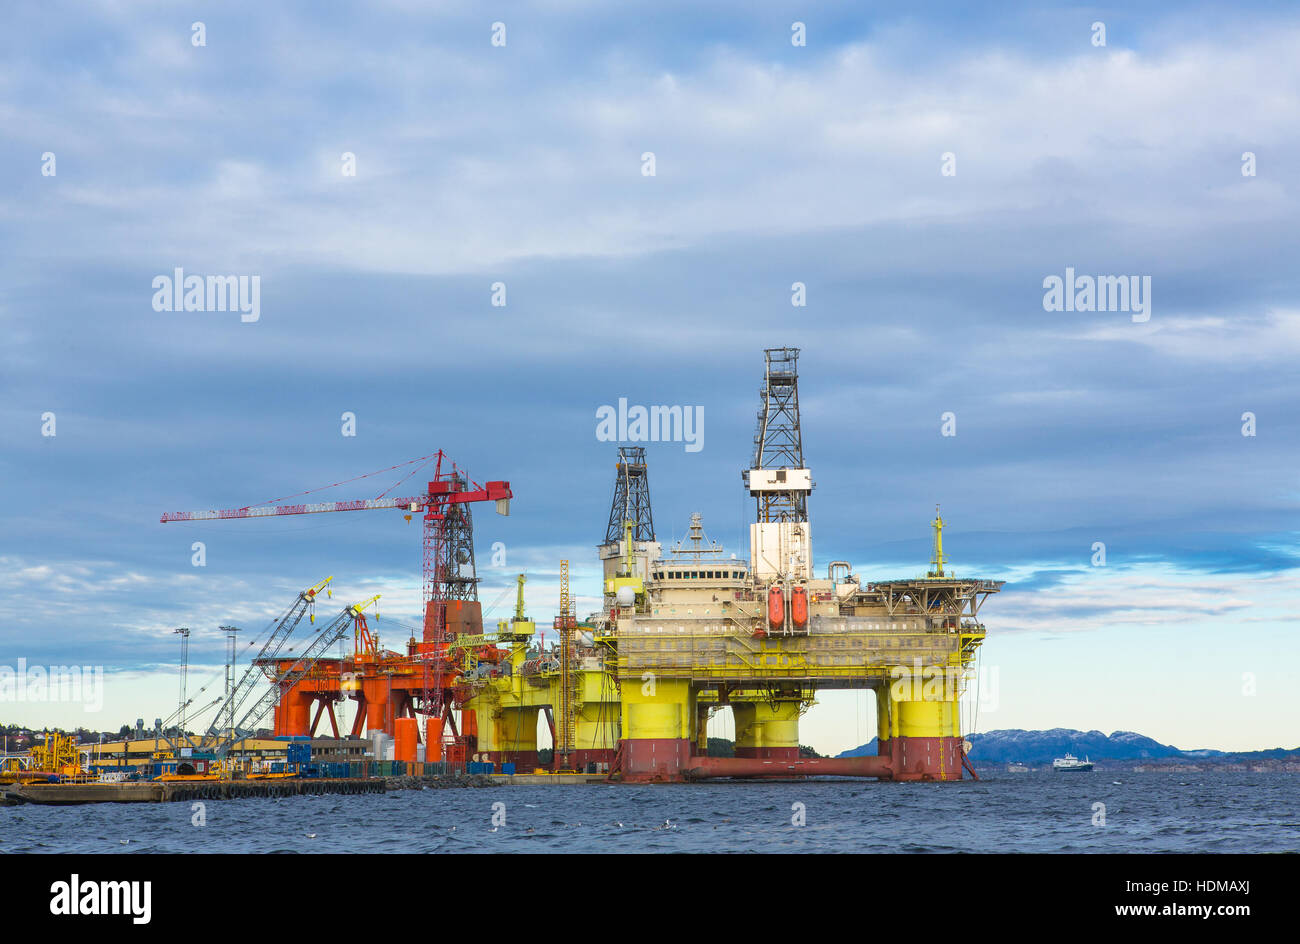 Oil platforms under maintenance near Bergen, Norway Stock Photo